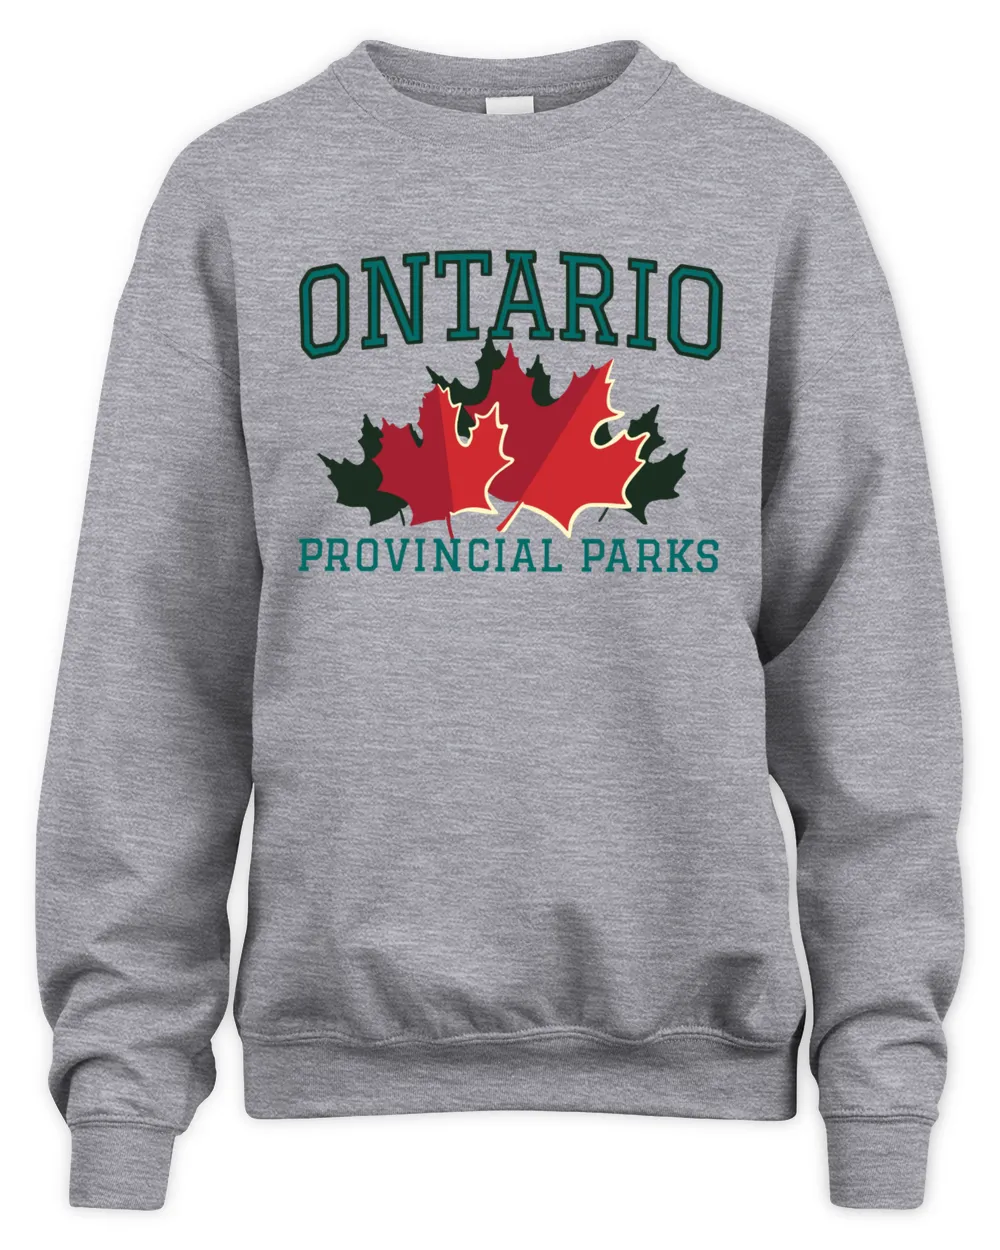 Ontario Provincial Parks Vintage Maple Leaf Shirt, hoodie